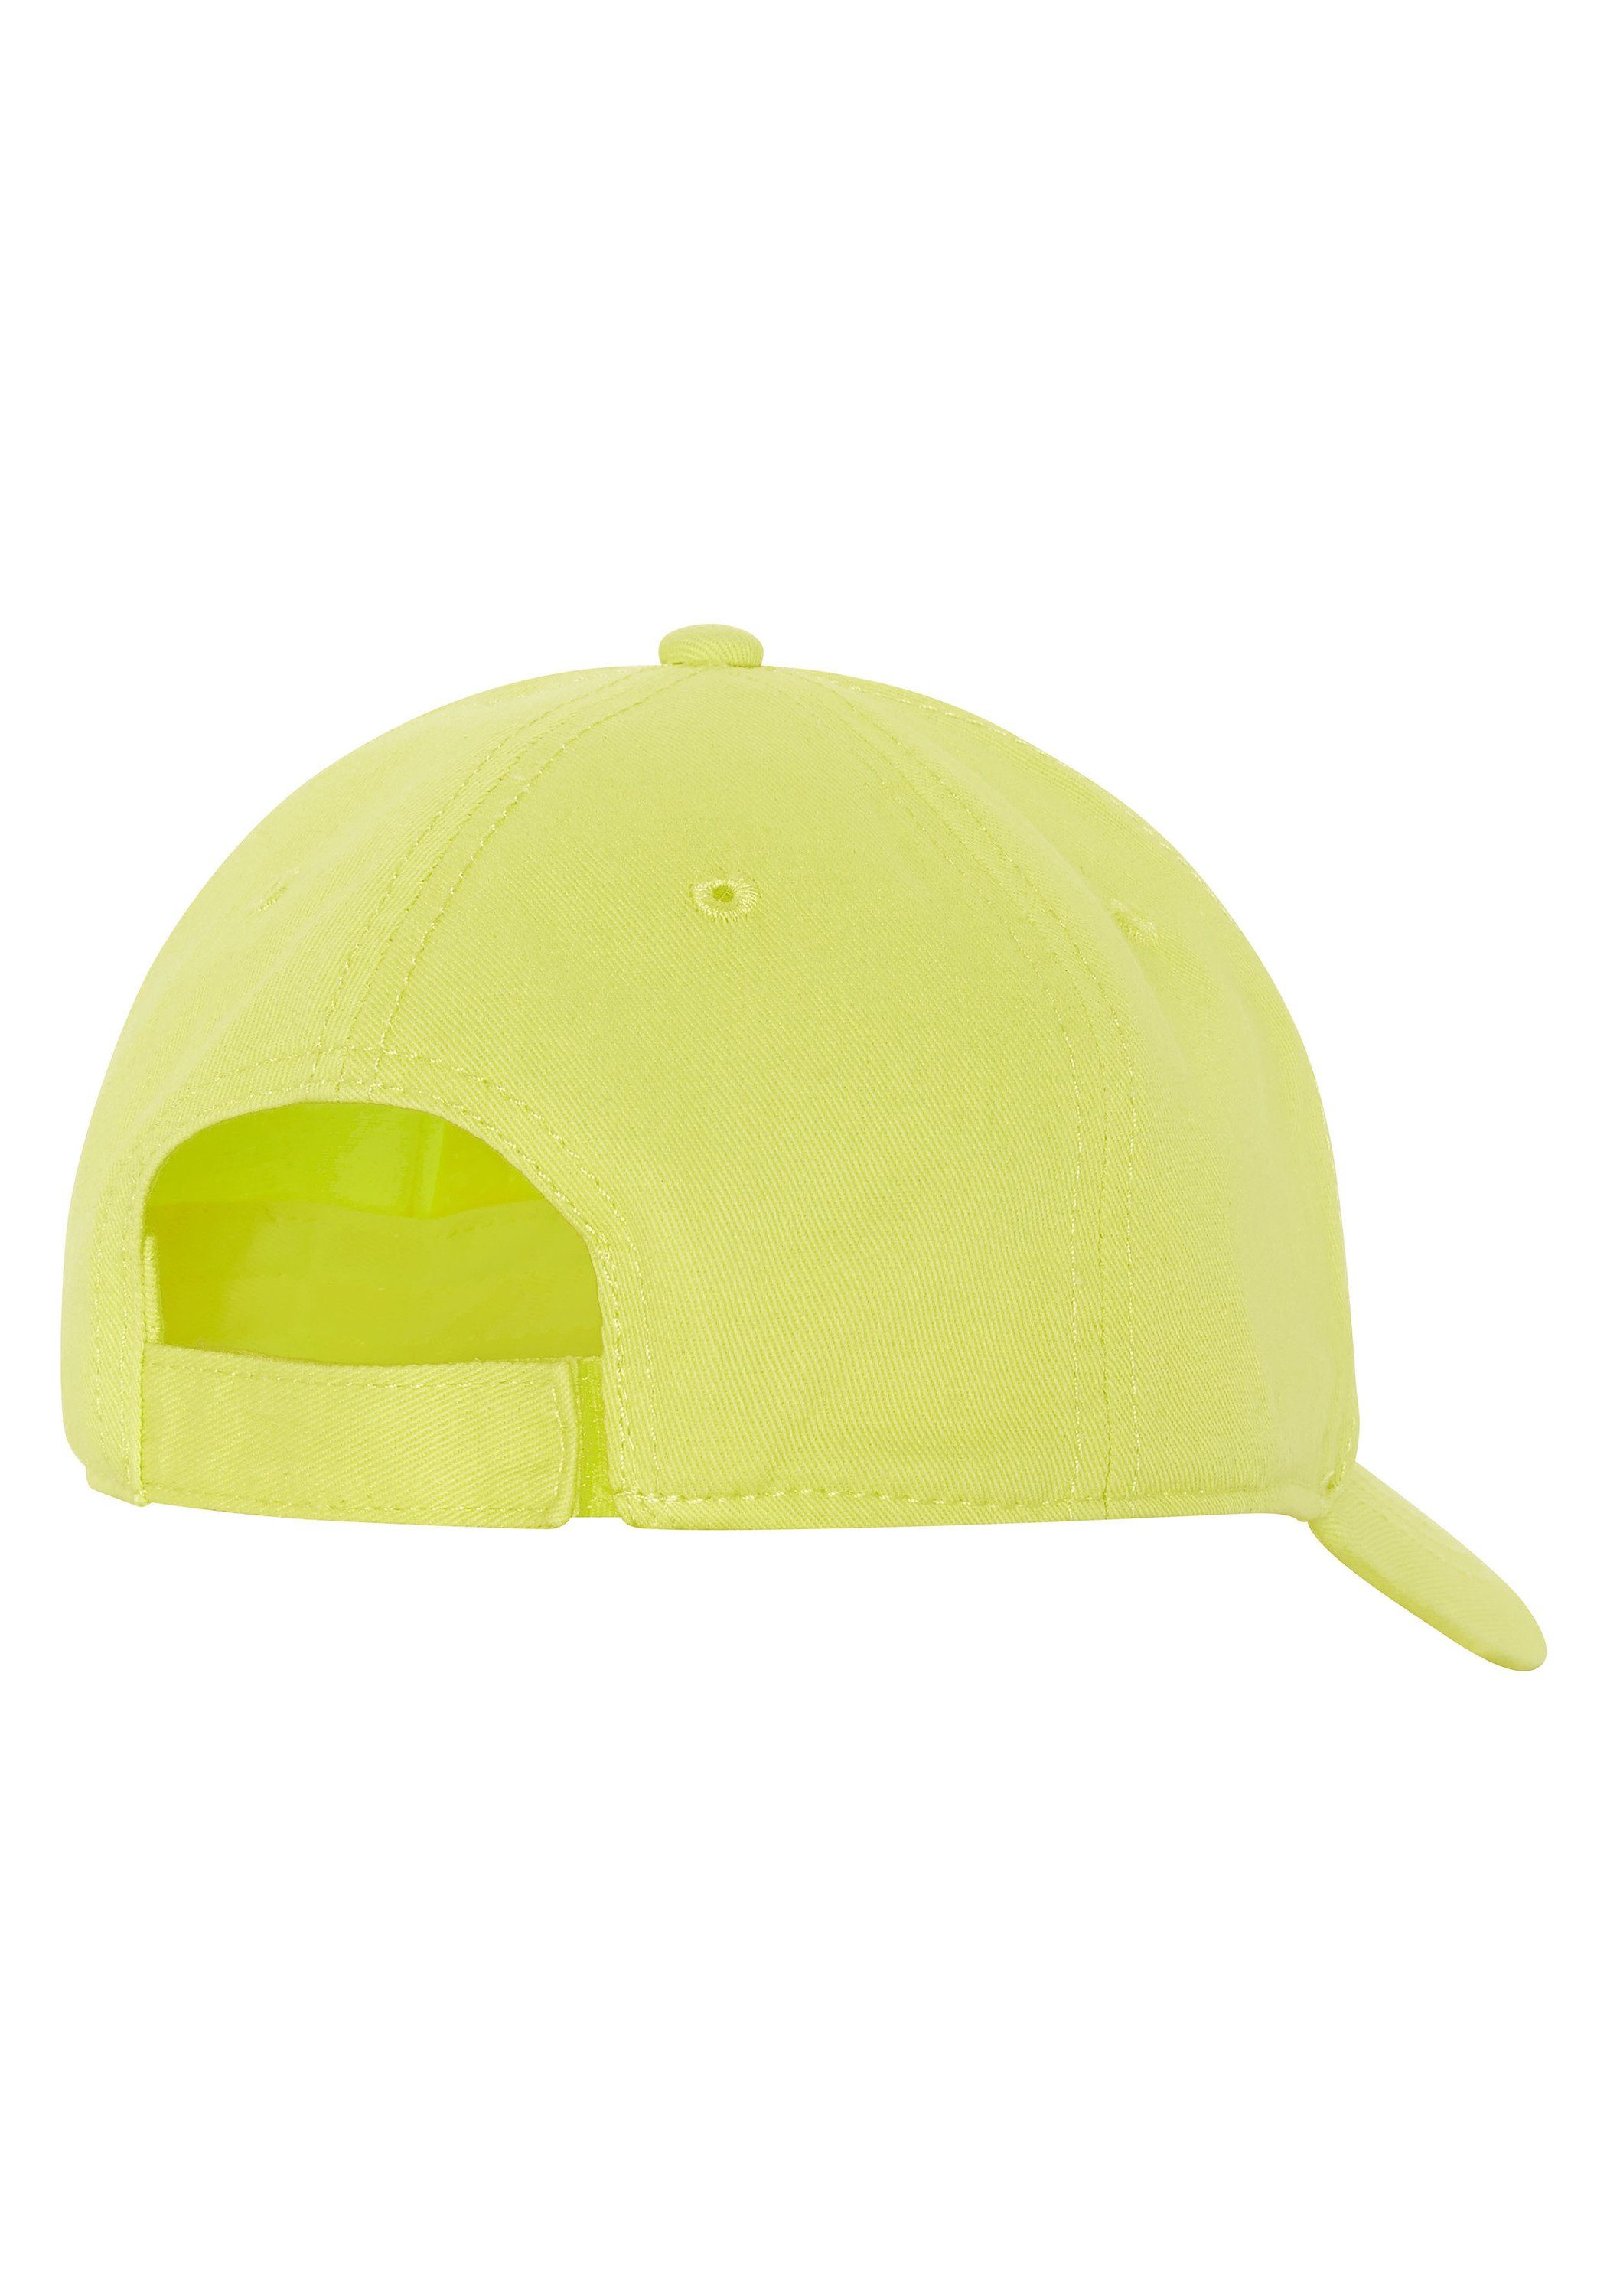 Chiemsee im aus Label-Design Cap Tonic Lemon Snapback Cap Baumwolle 1 Unisex